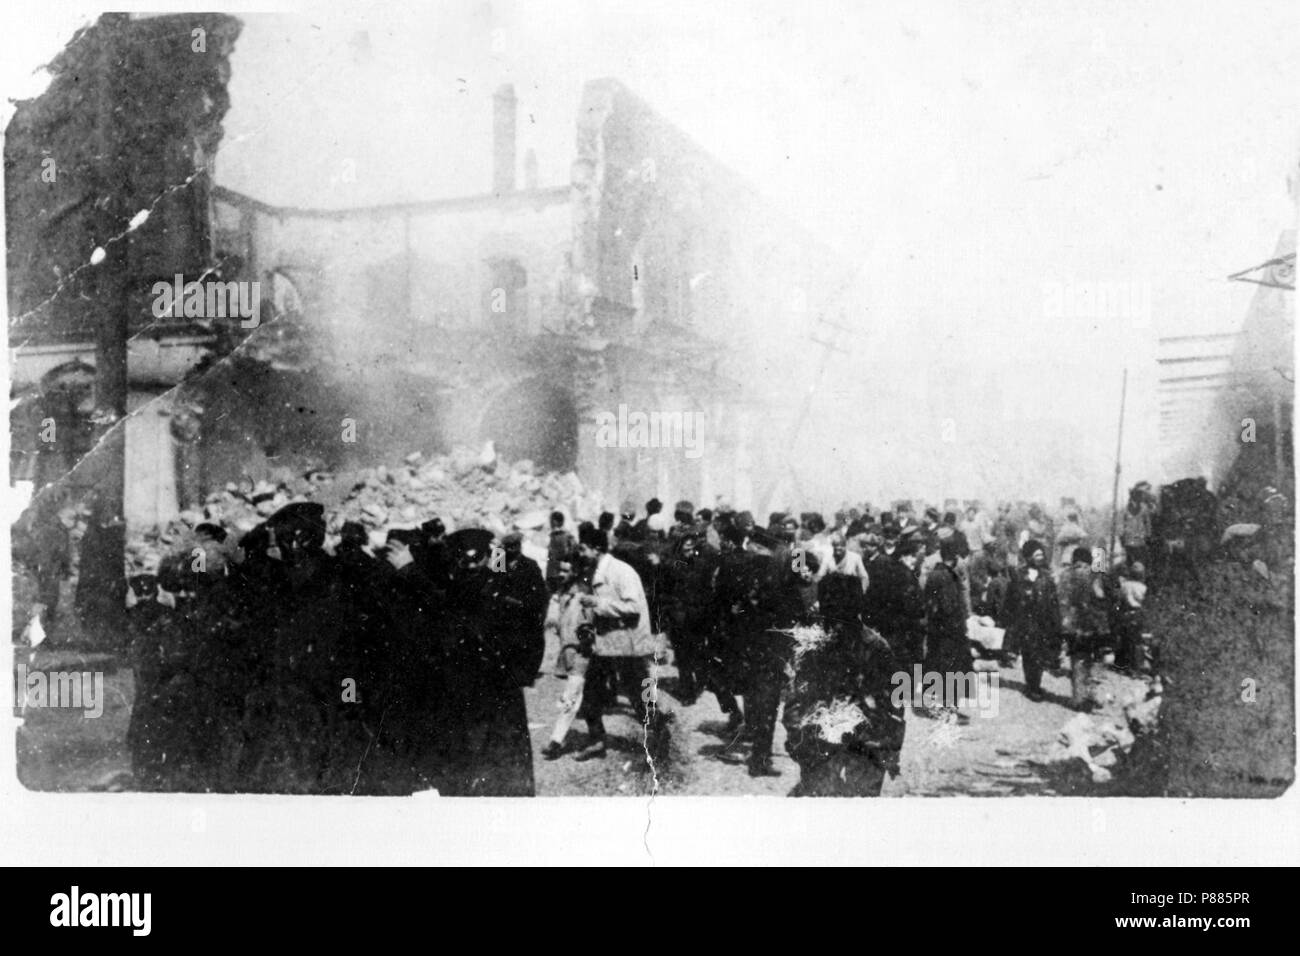 5 march days 1918 Stock Photo - Alamy